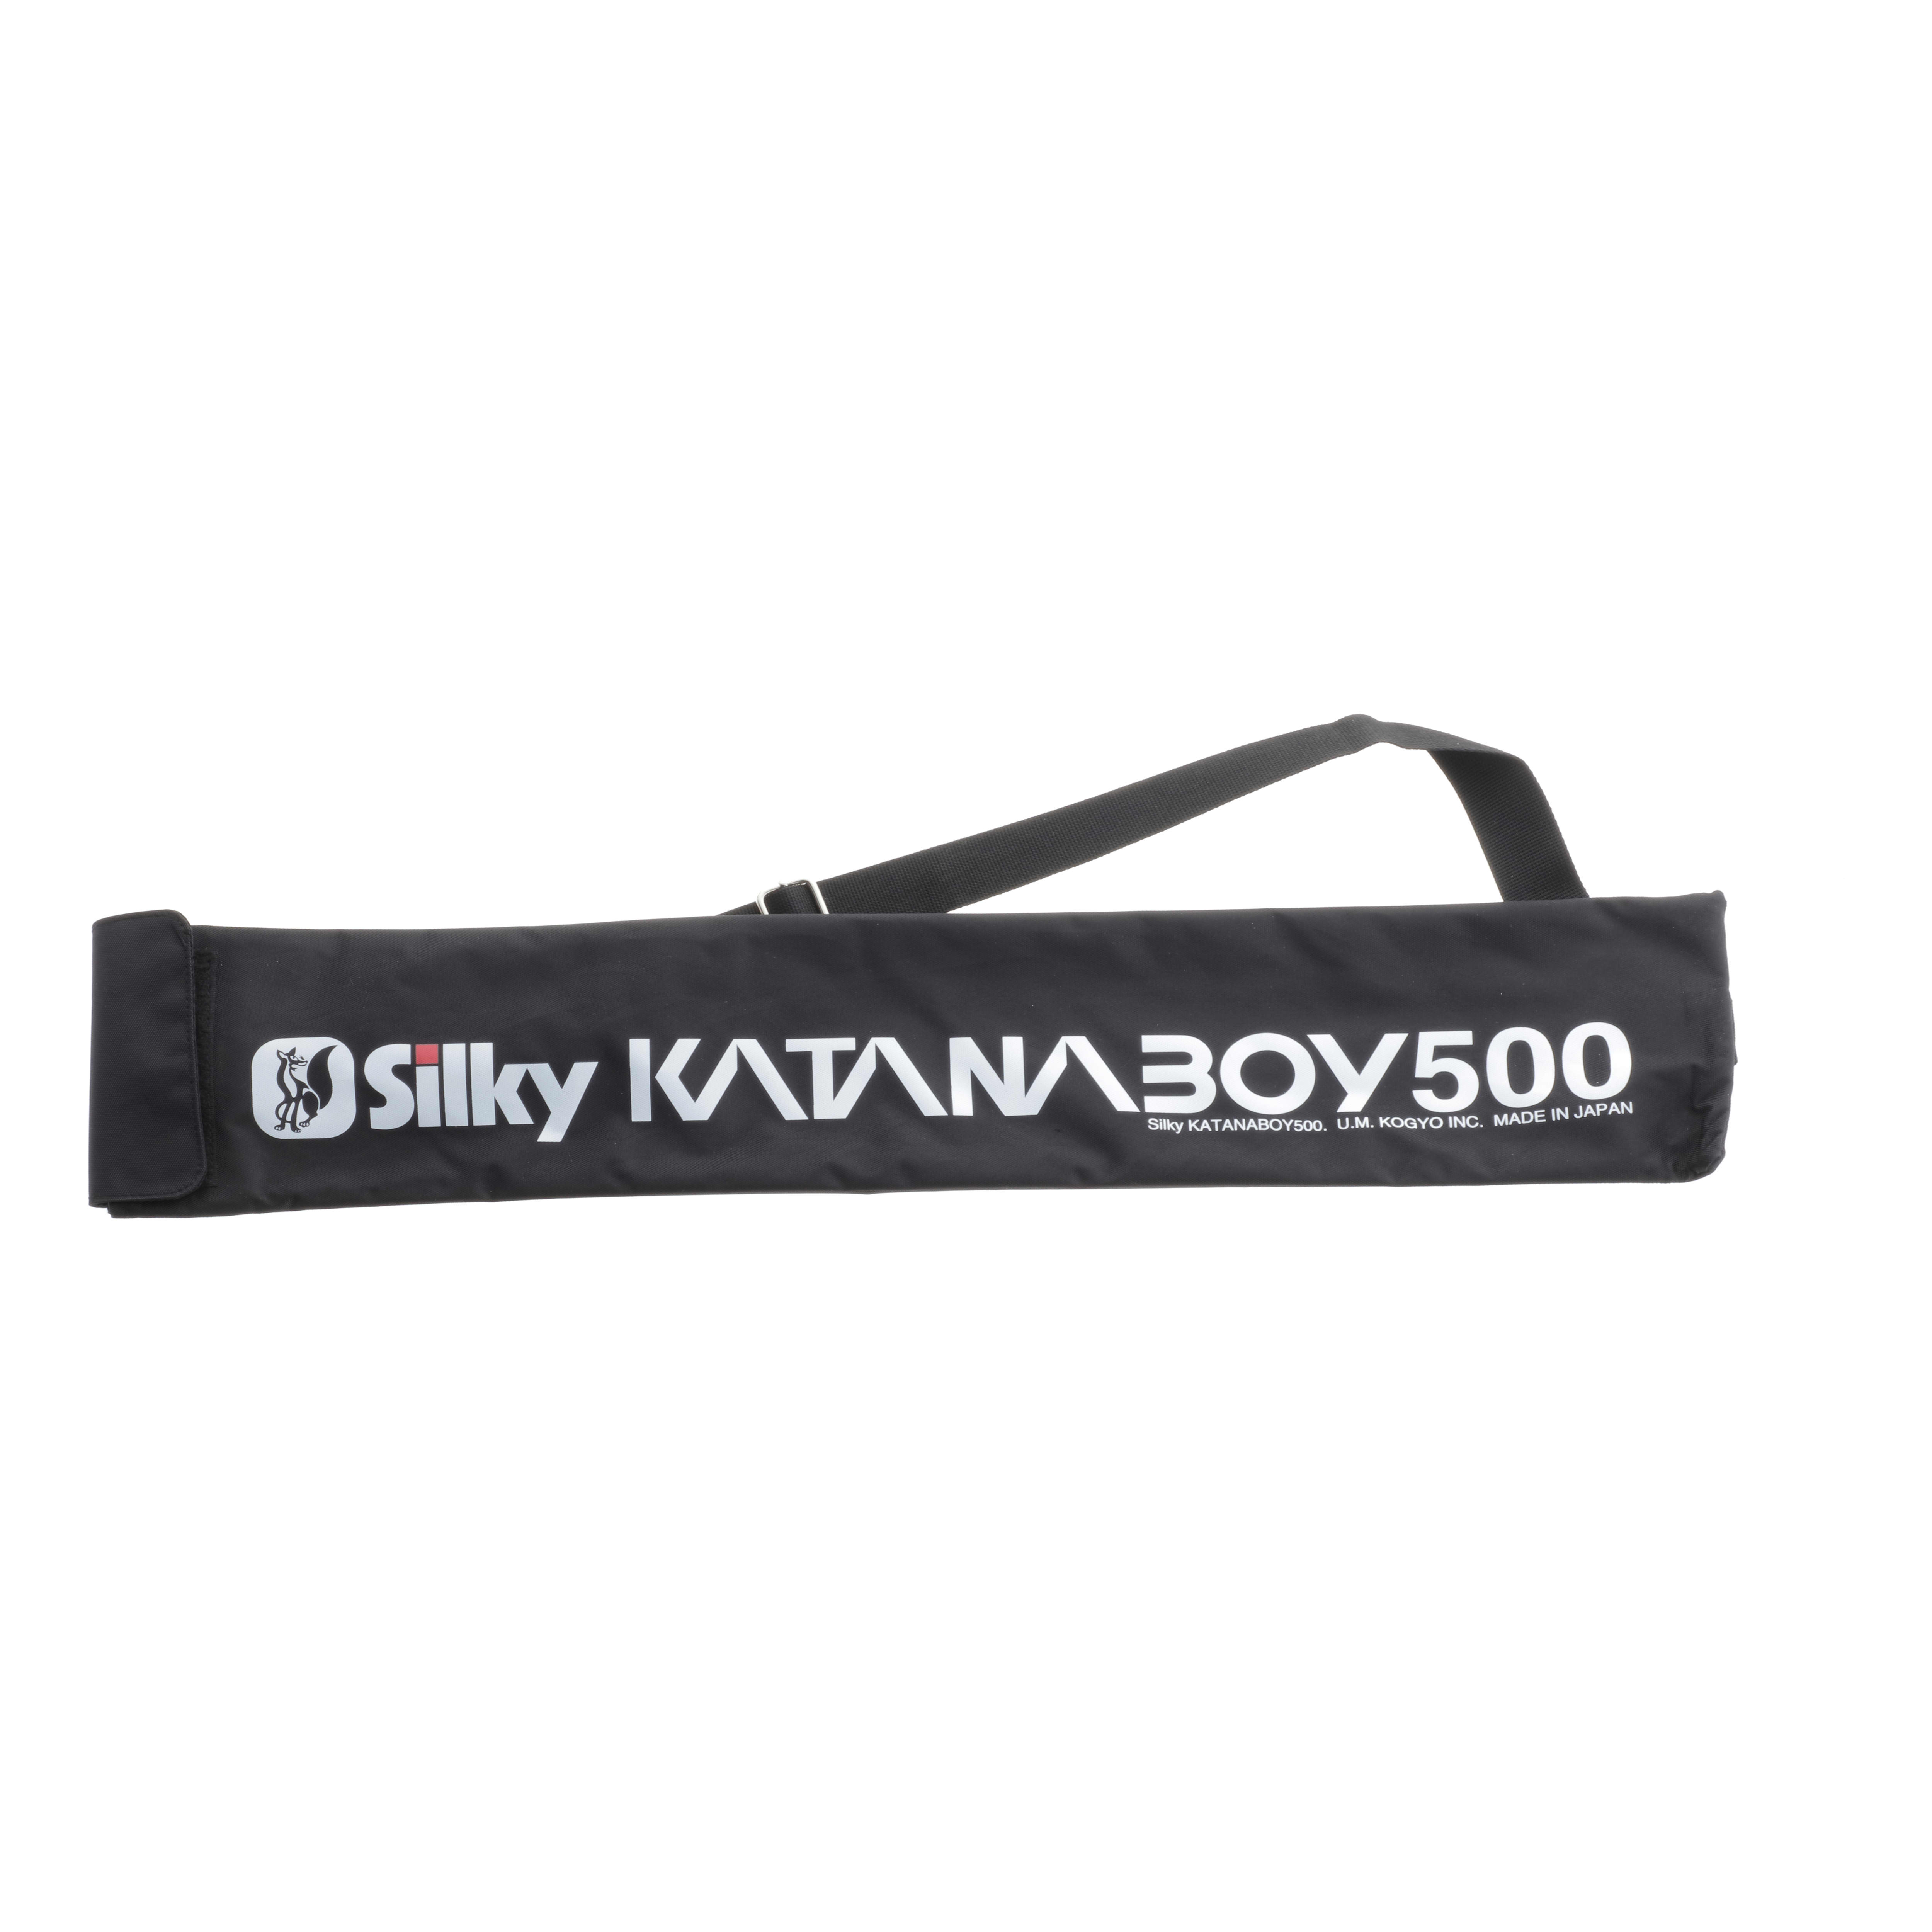 Silky® Katanaboy 500 Folding Saw